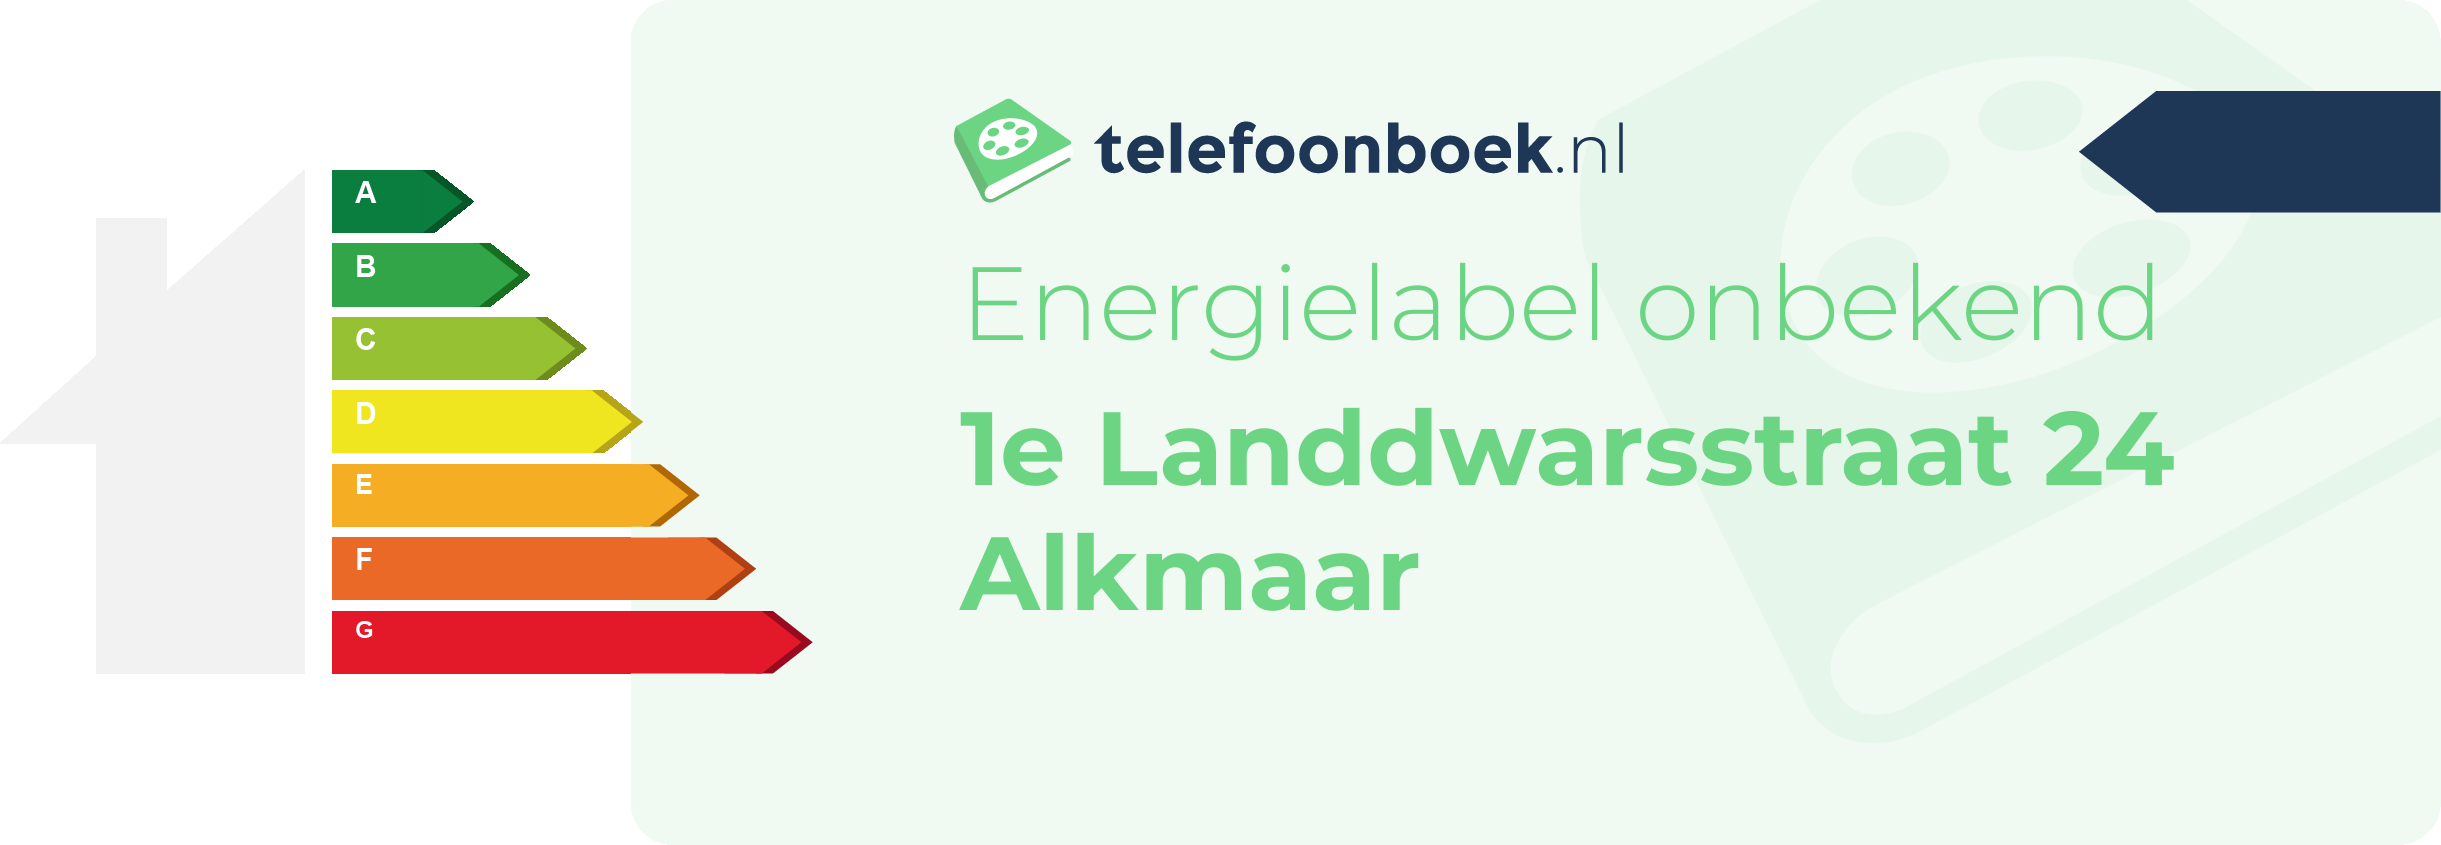 Energielabel 1e Landdwarsstraat 24 Alkmaar